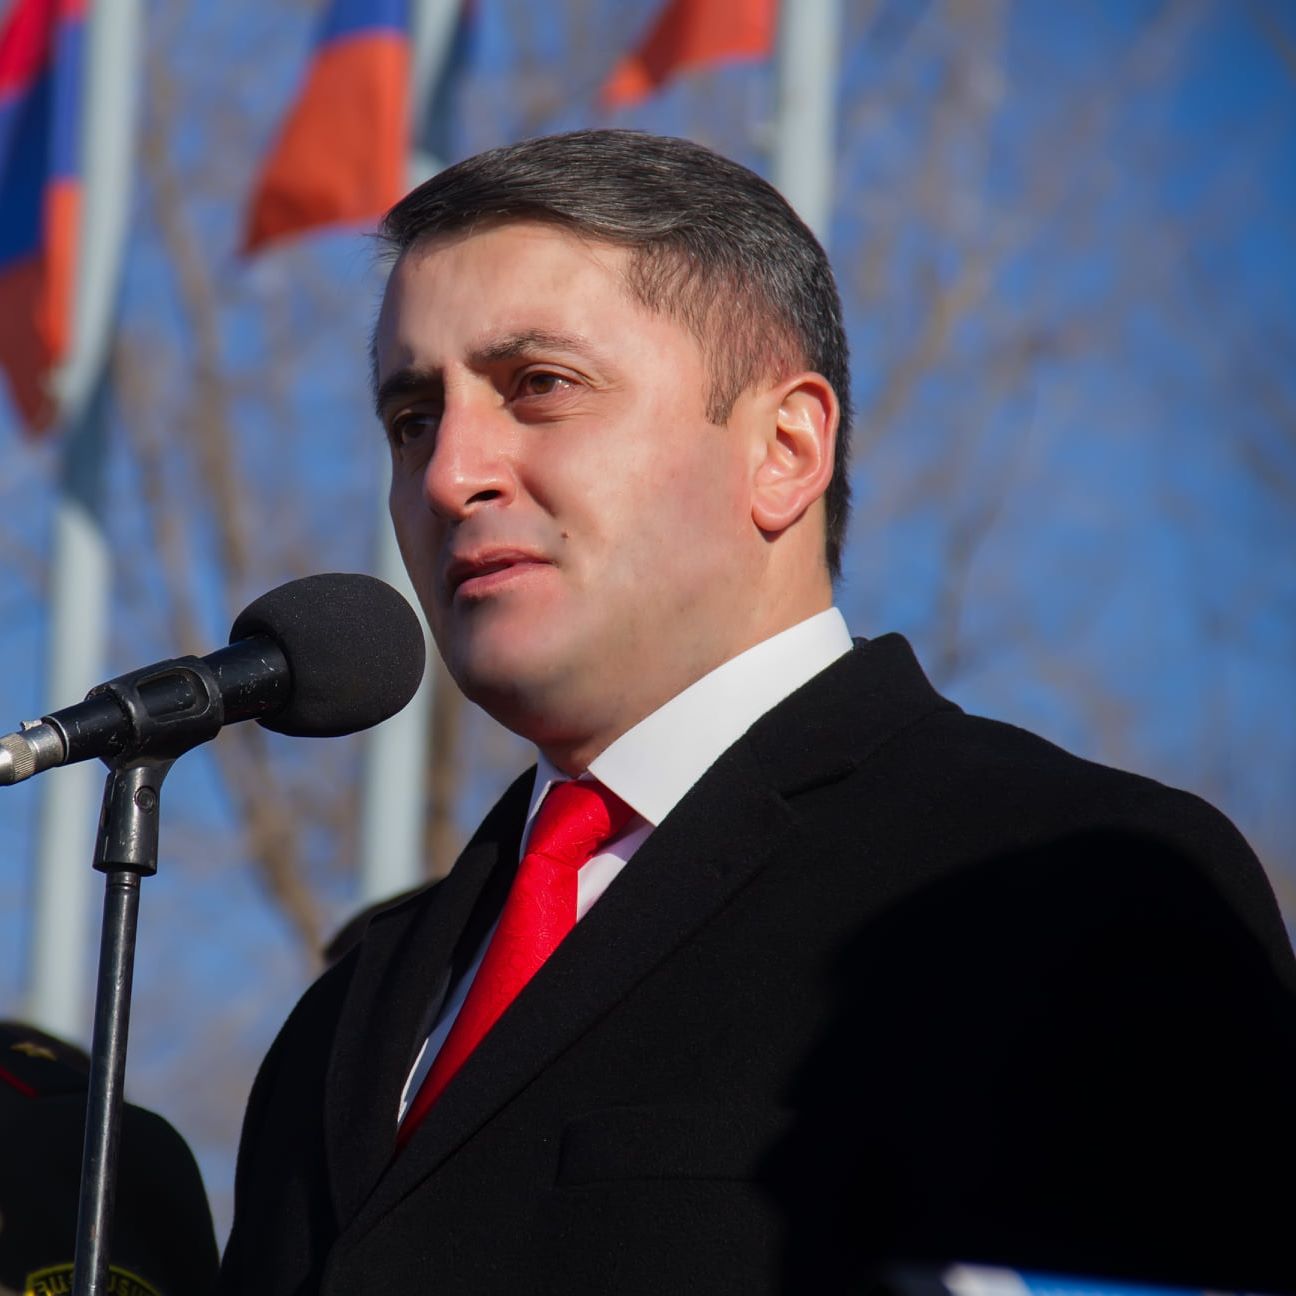 Արցախի իշխանությունը պաշտոնապես պետք է դիմի Հայաստանին միավորելու առաջարկով. Ասրյան